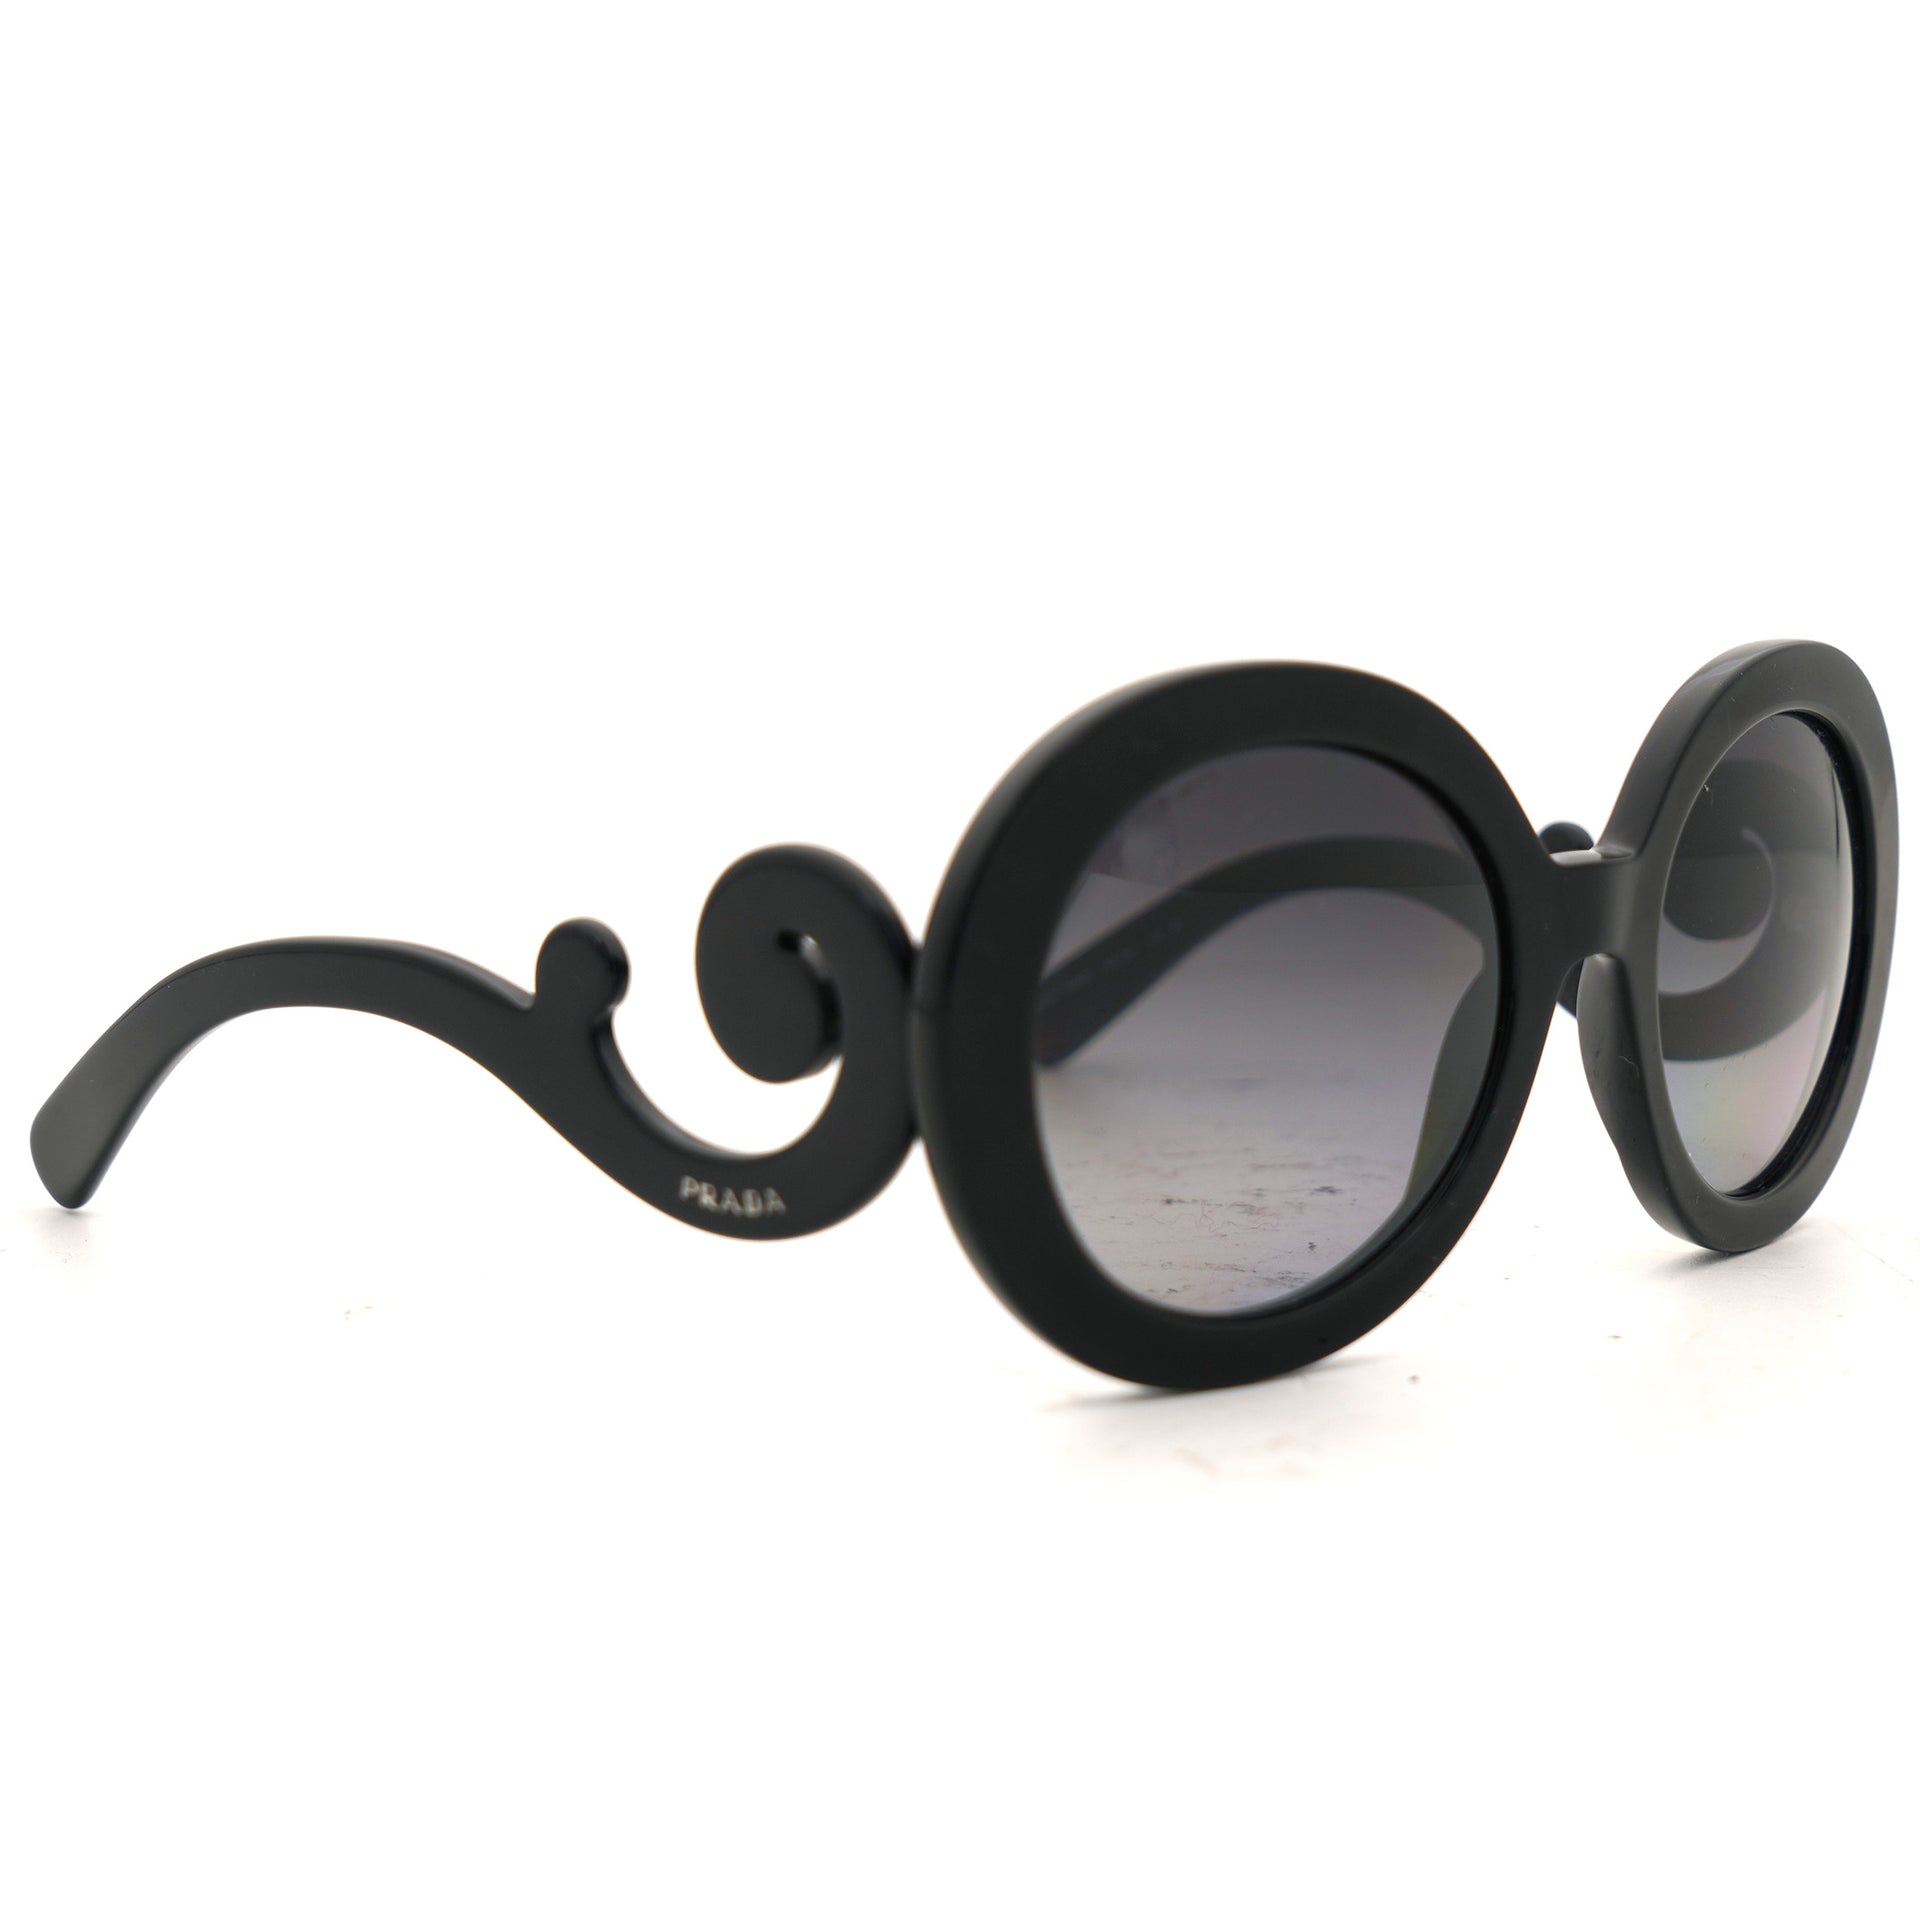 Prada Men's Sunglasses Linea Rossa - Black Rubber - iCuracao.com